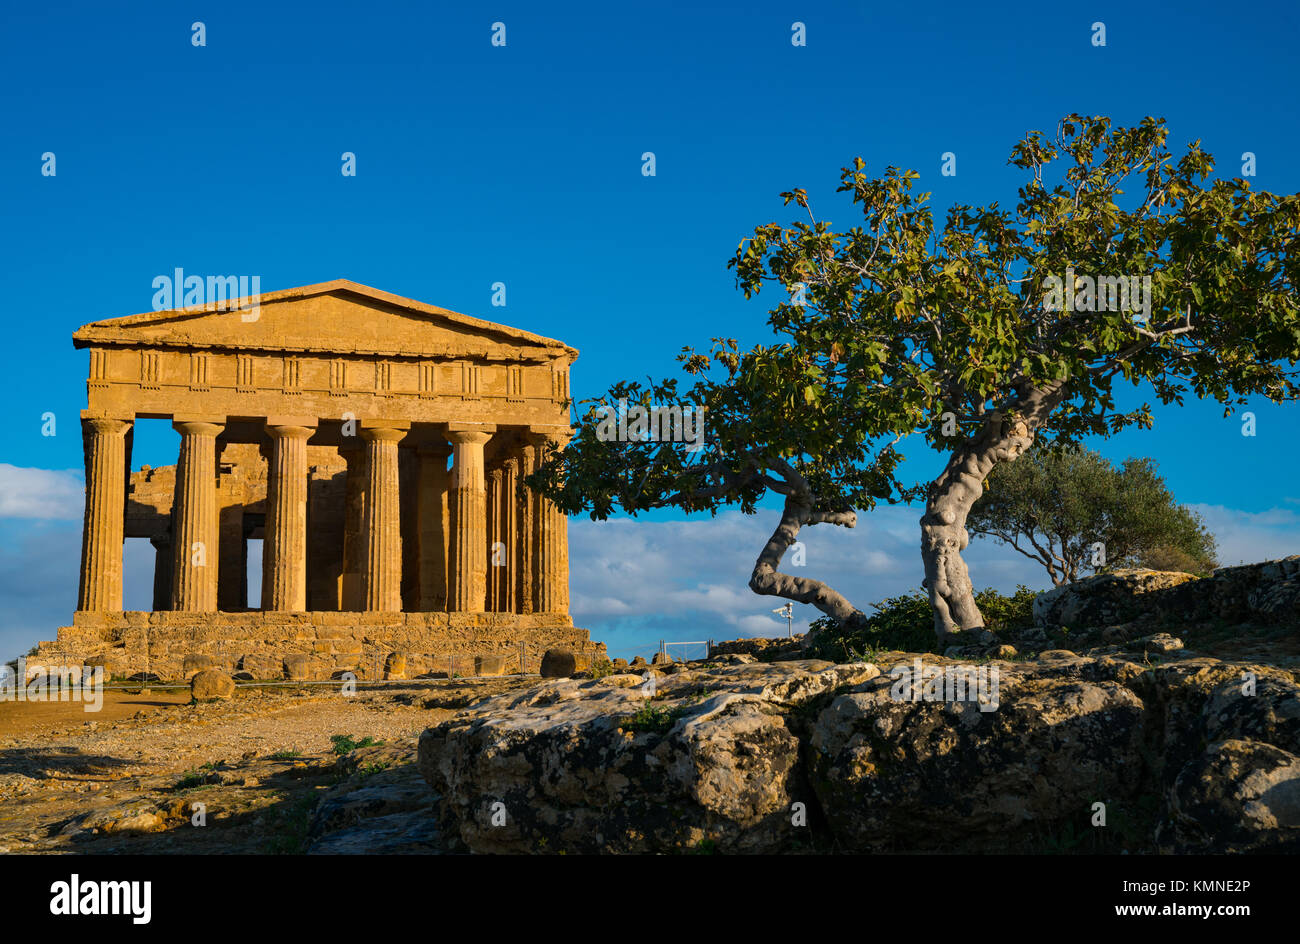 Tempio della Concordia, Valle di Templi, Valley of Temples, Agrigento, Sicily,Italy, 12.04.2017, Stock Photo